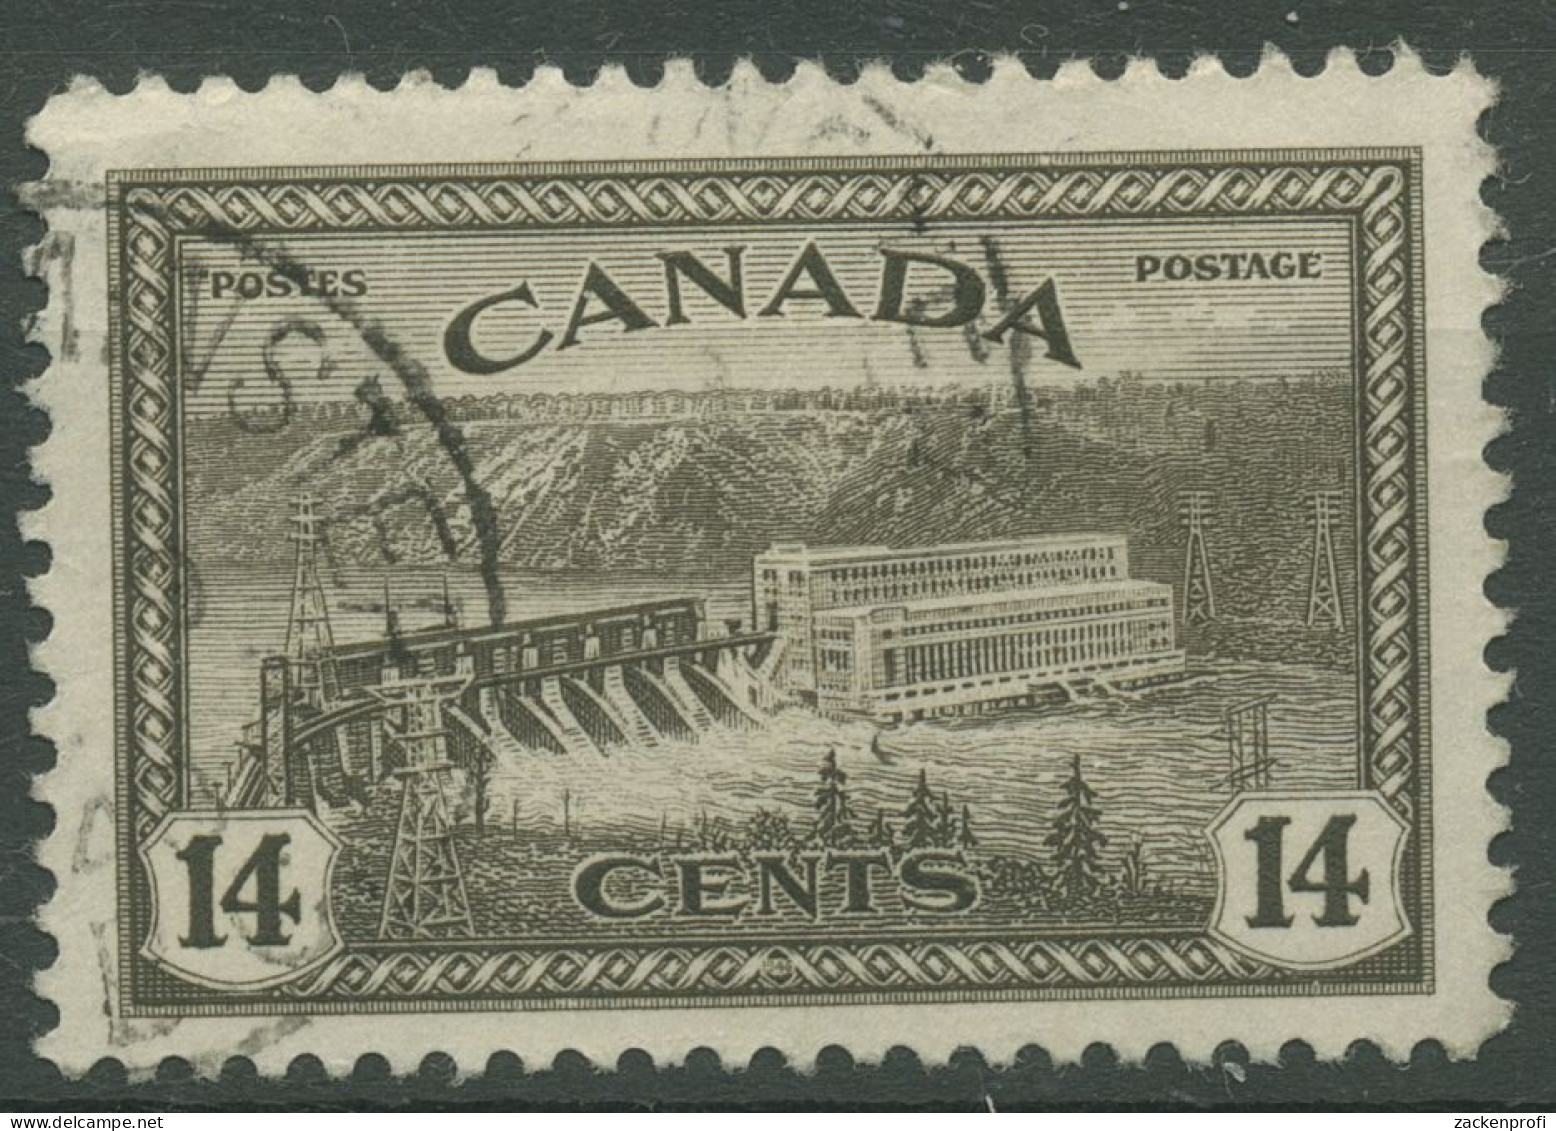 Kanada 1946 Umstellung Auf Friedensproduktion Wasserkraftwerk 237 Gestempelt - Usati